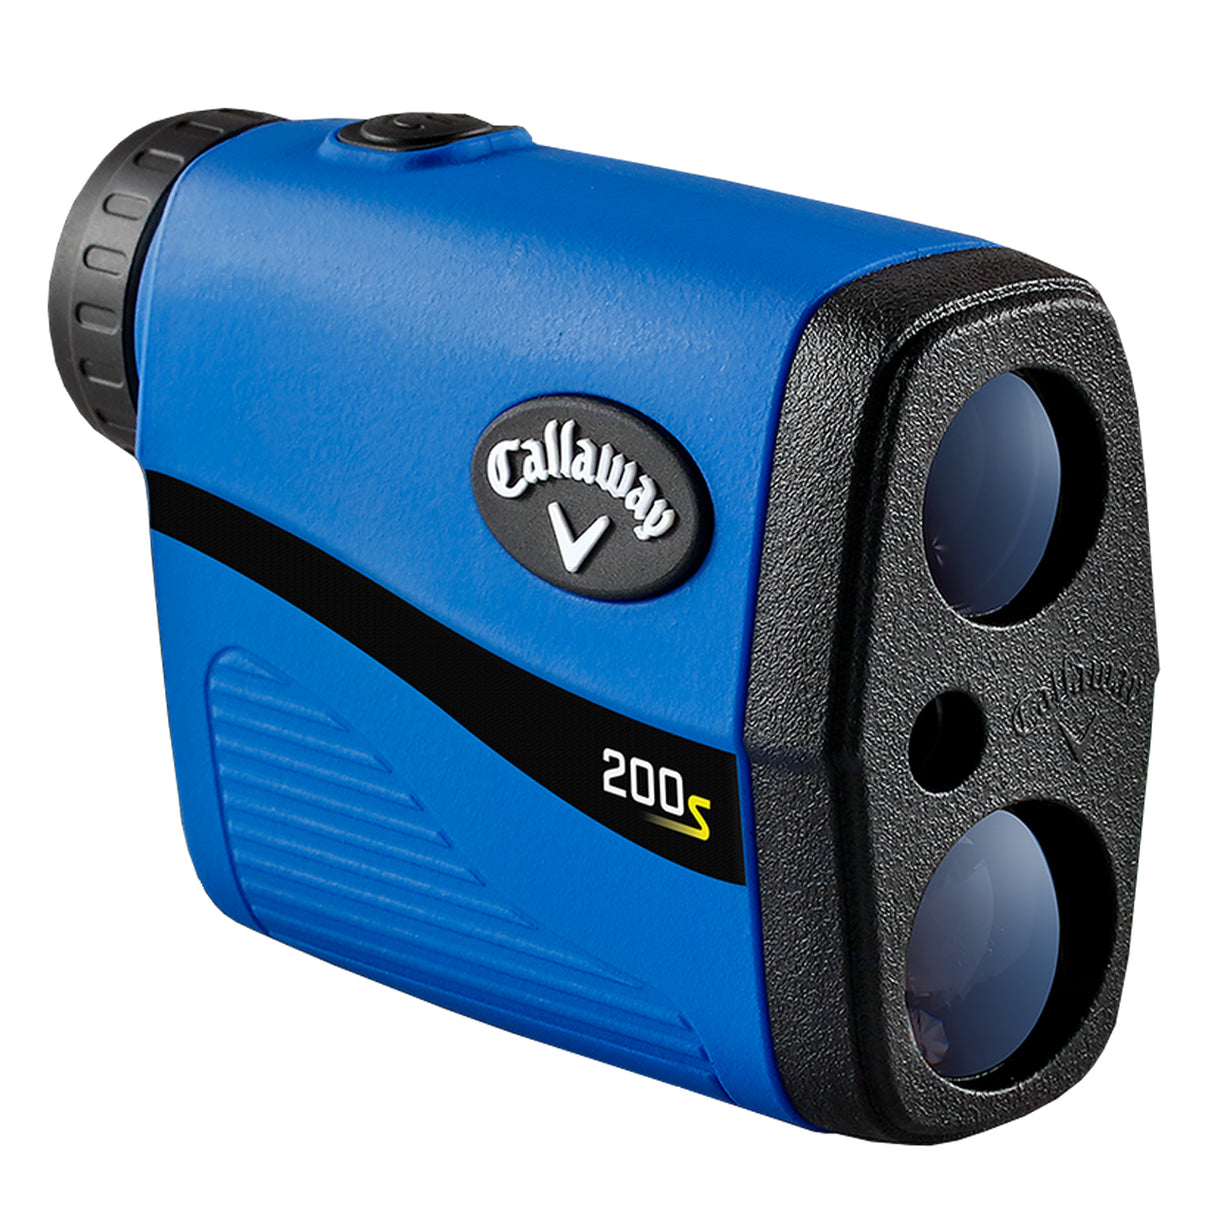 Callaway Golf 200S Sloped Laser Rangefinder